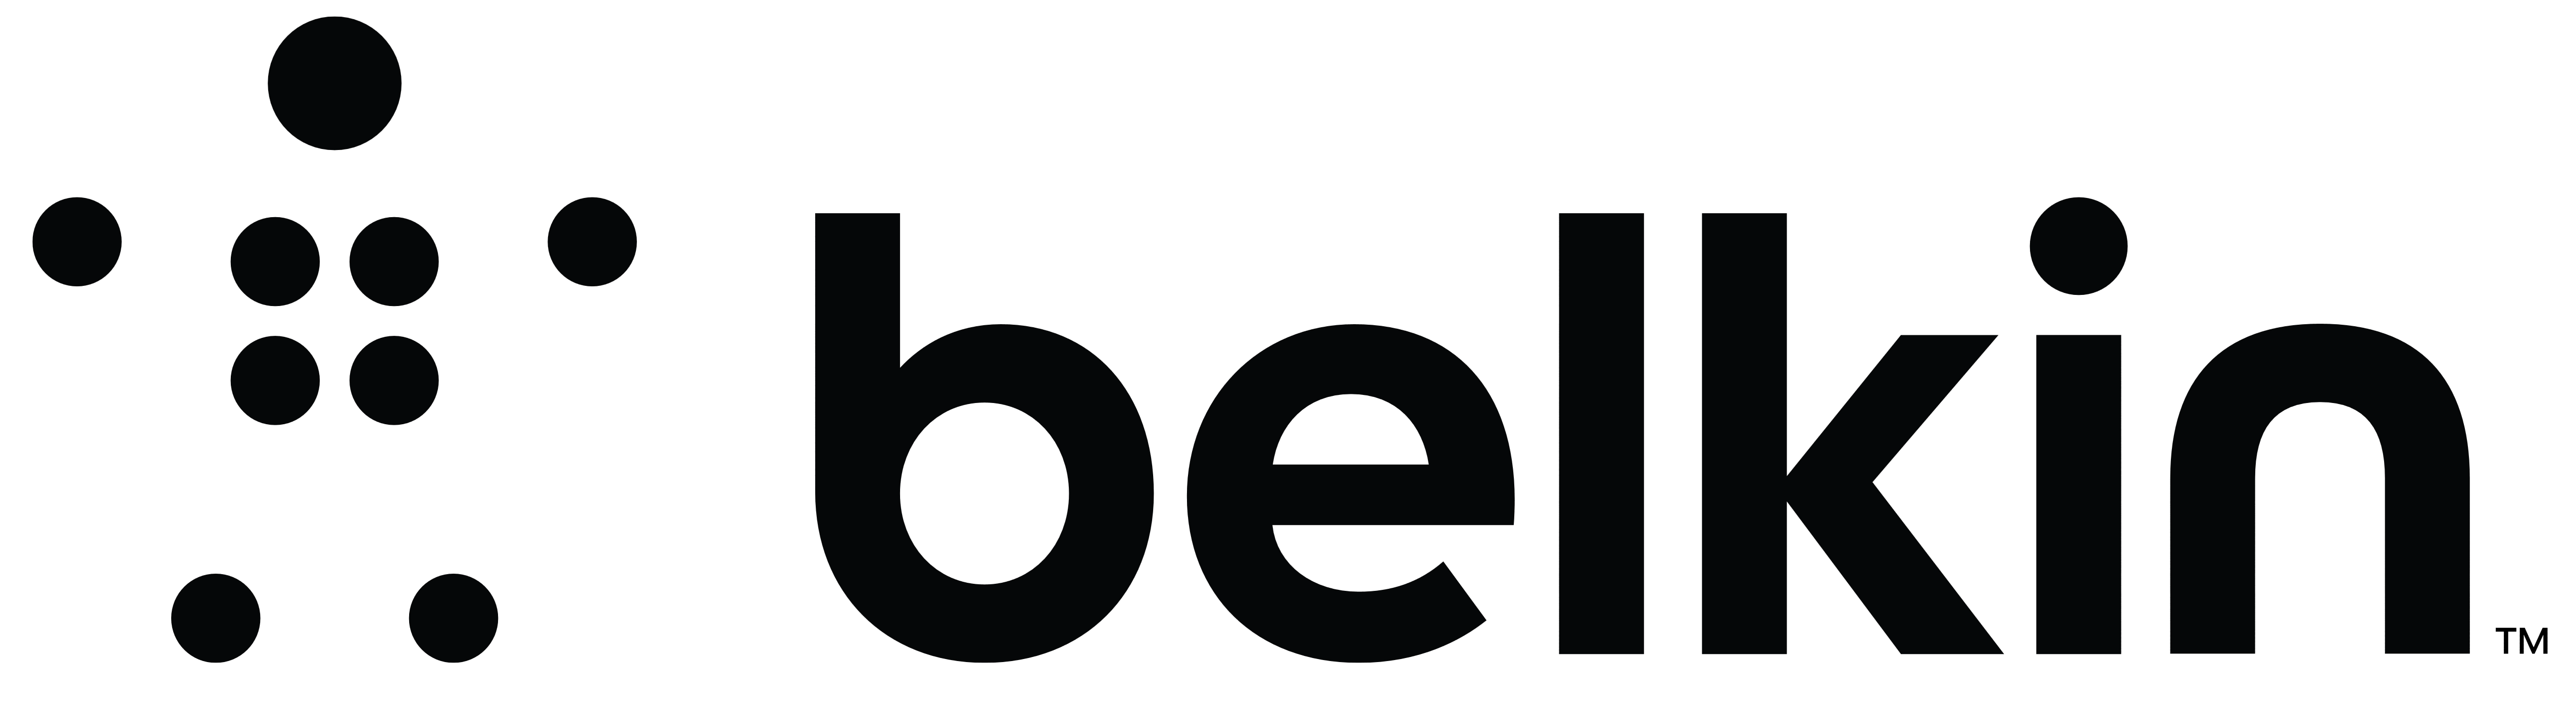 Belkin Banner Logo